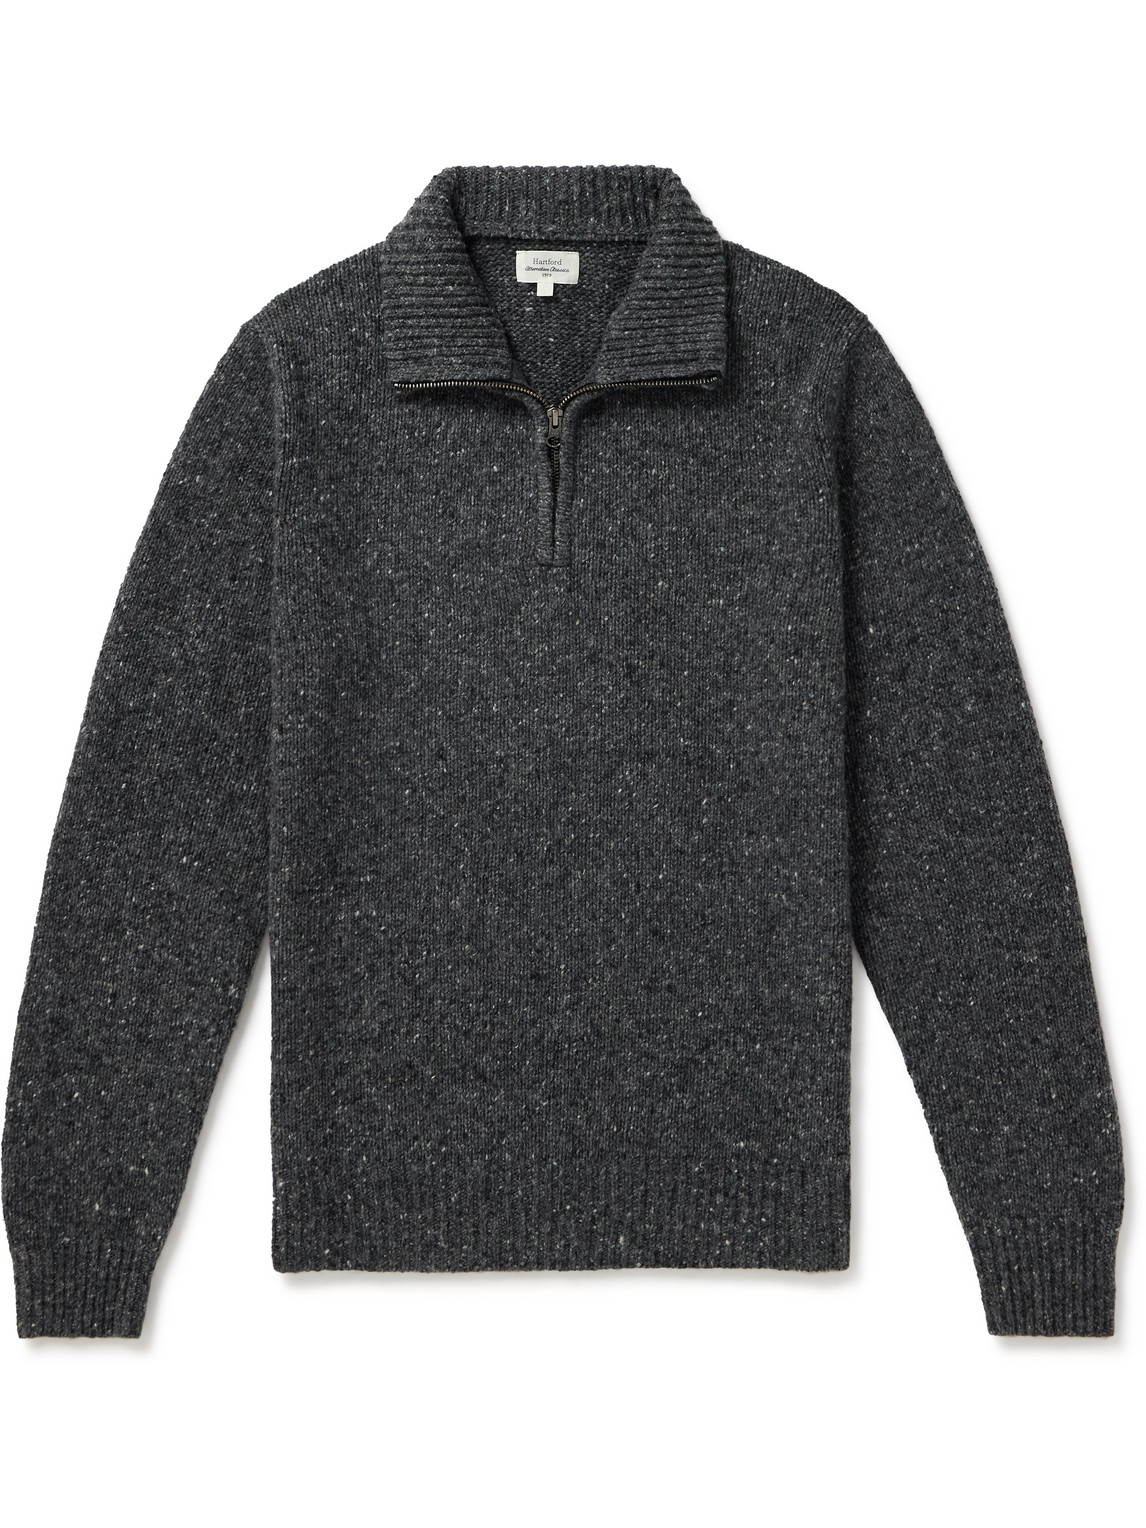 Hartford - Trucker Donegal Wool-Blend Half-Zip Sweater - Men - Gray - L von Hartford